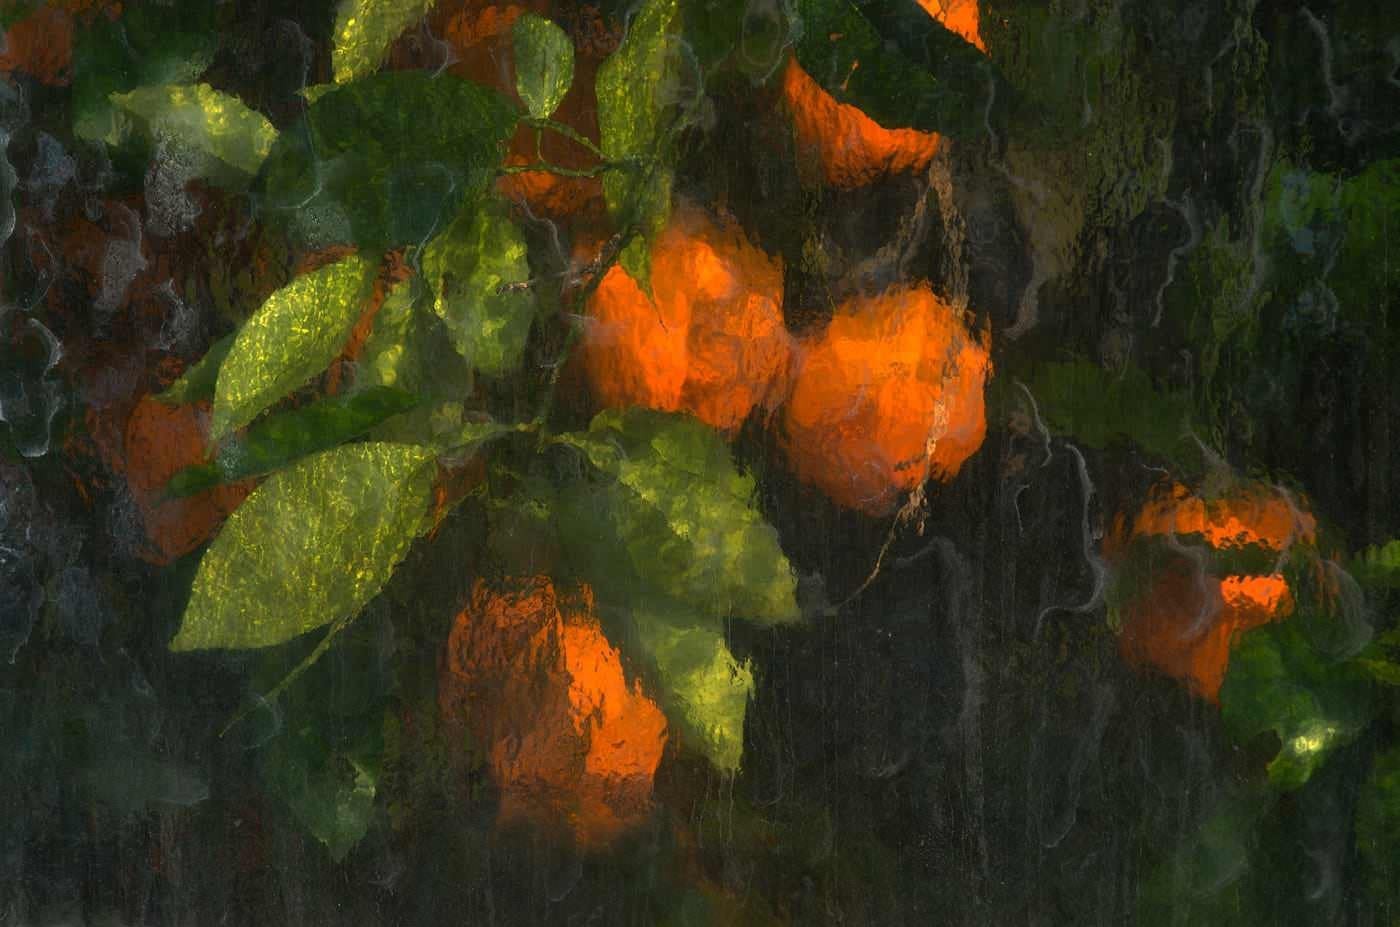 Апельсины, сфотографированные через стеклянные панели теплицы. Автор mikeleus